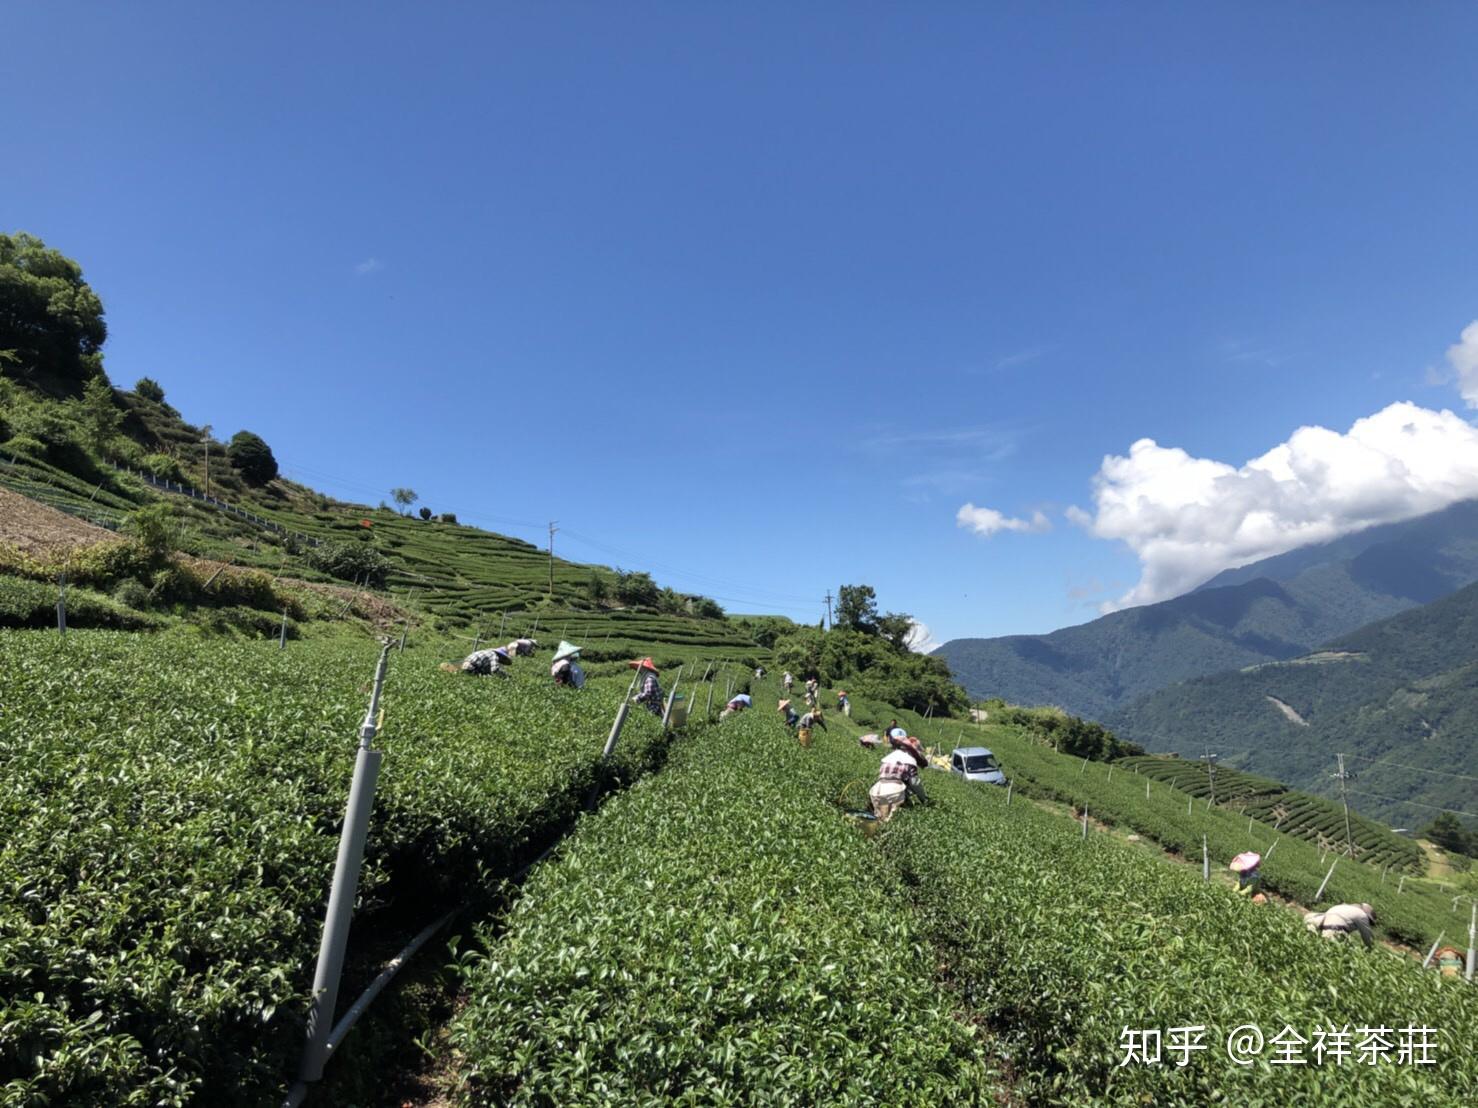 台湾的高山乌龙茶的品质如何?在大陆这边属于